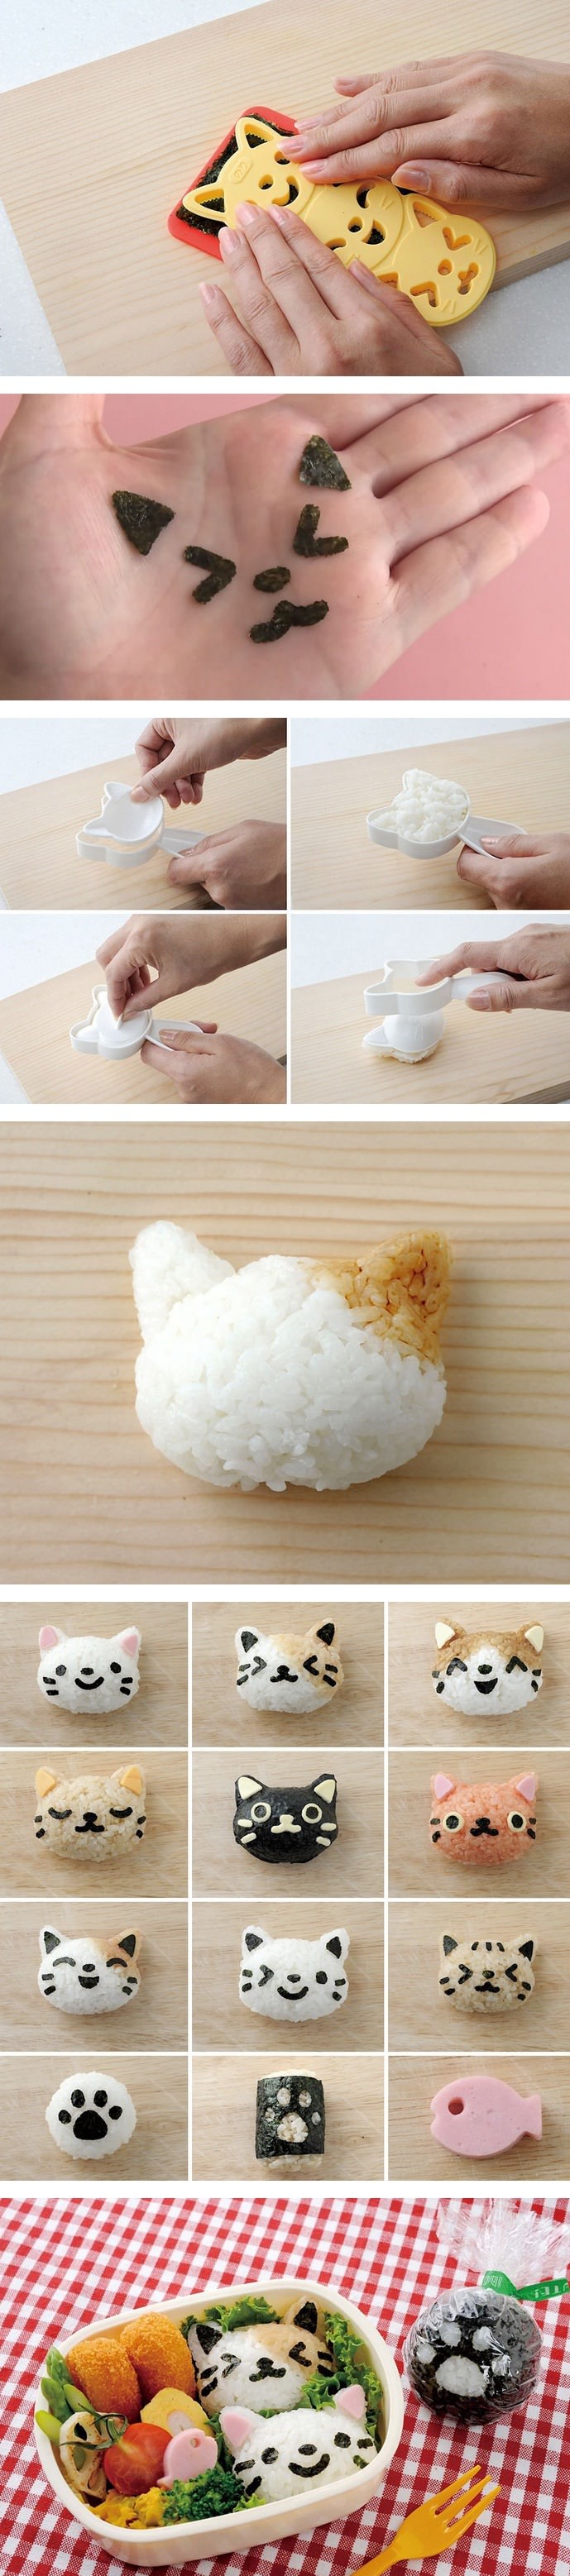 일본에서 만든 고양이 주먹밥 틀